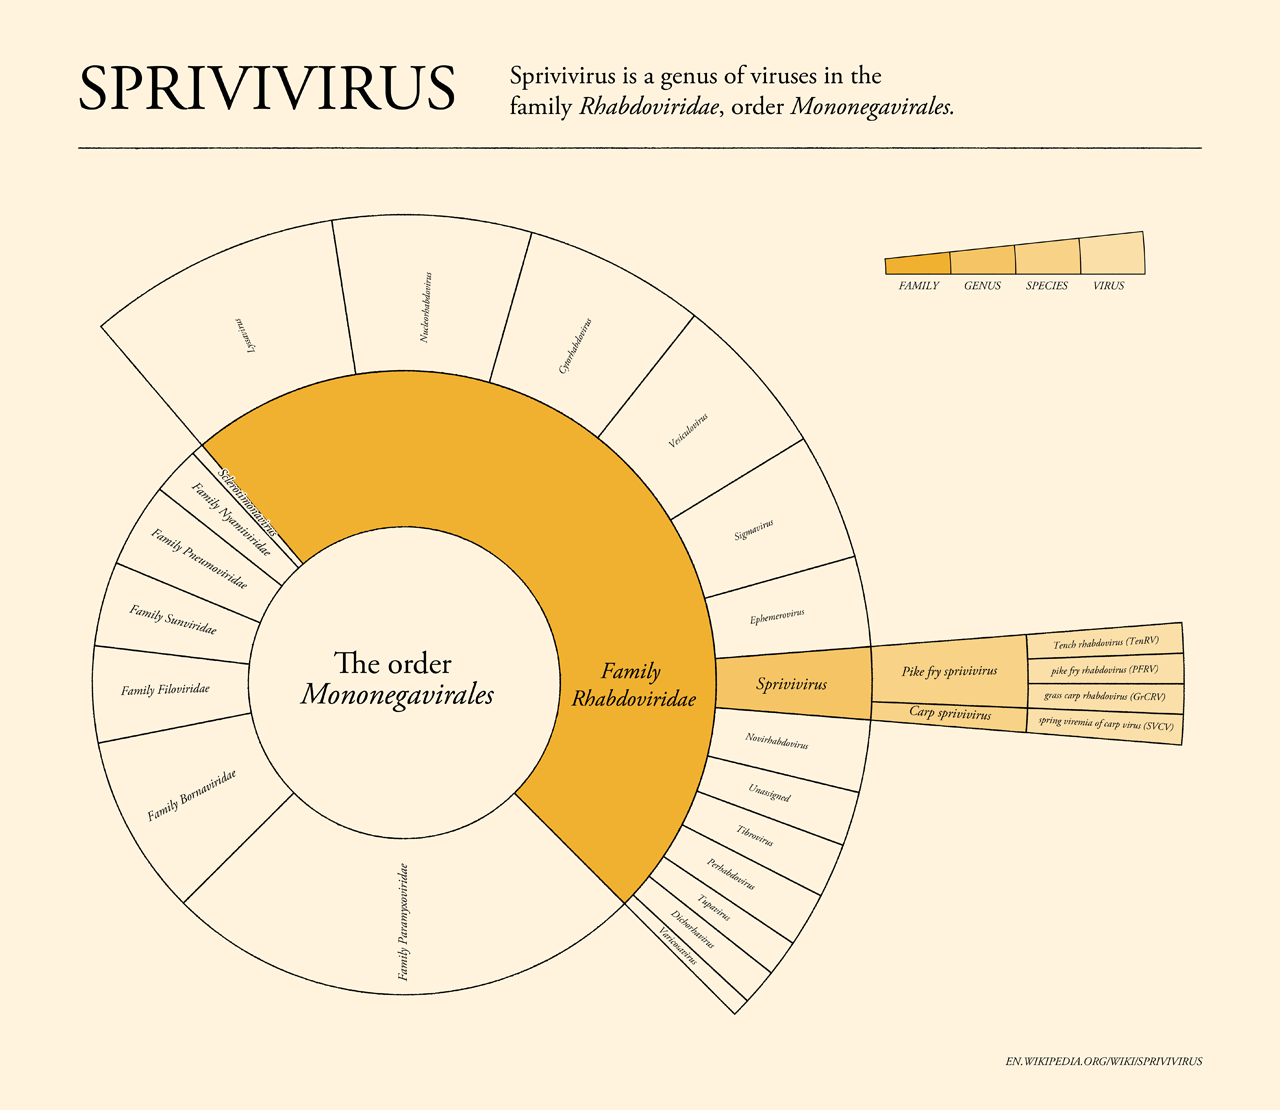 Spirivirus